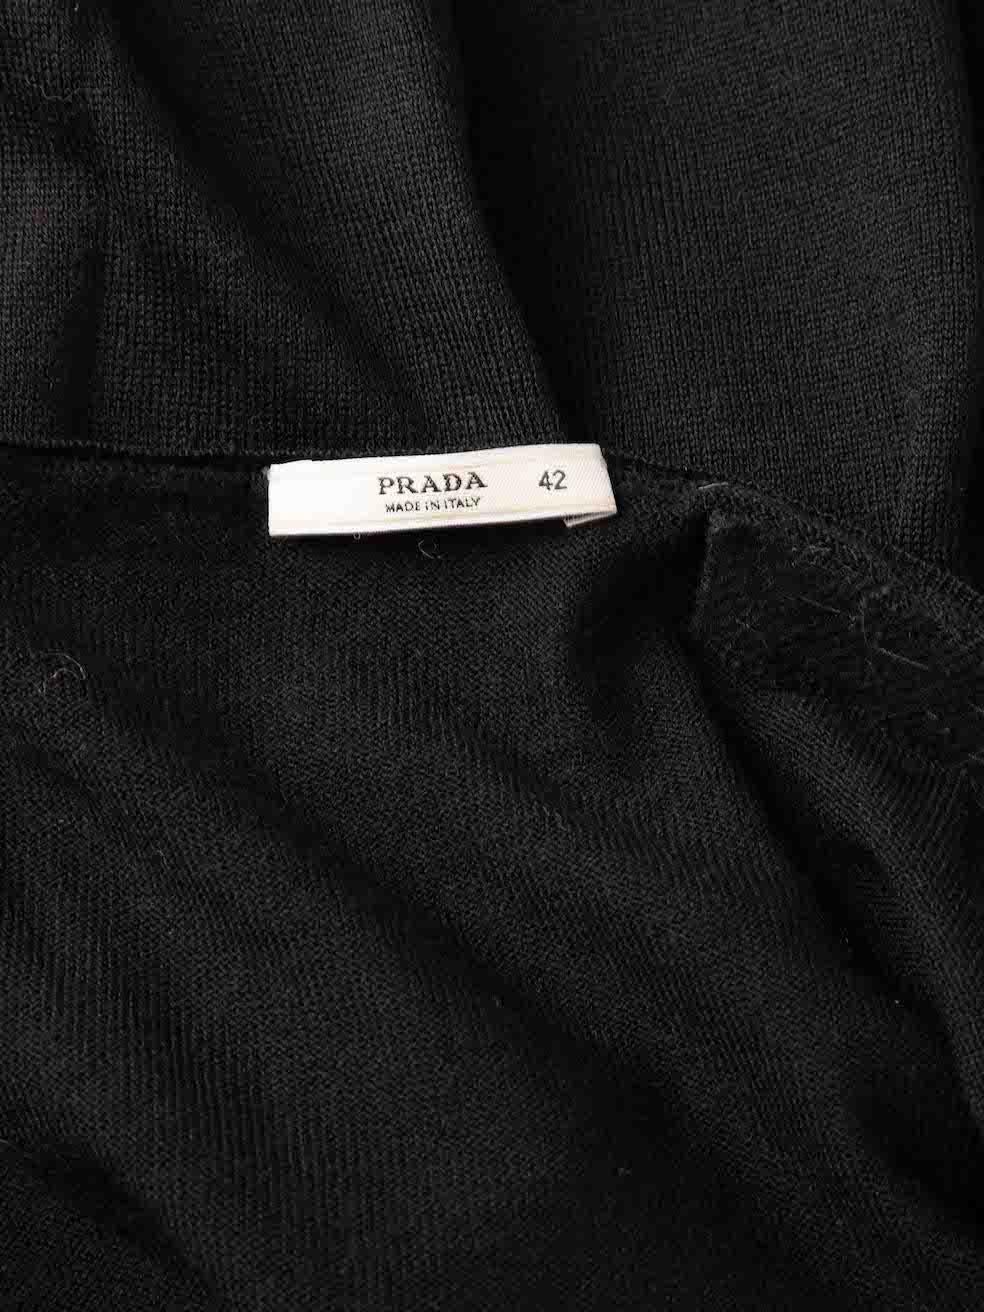 Prada Women's Black Embellished Cold Shoulder Knitted Top For Sale 2